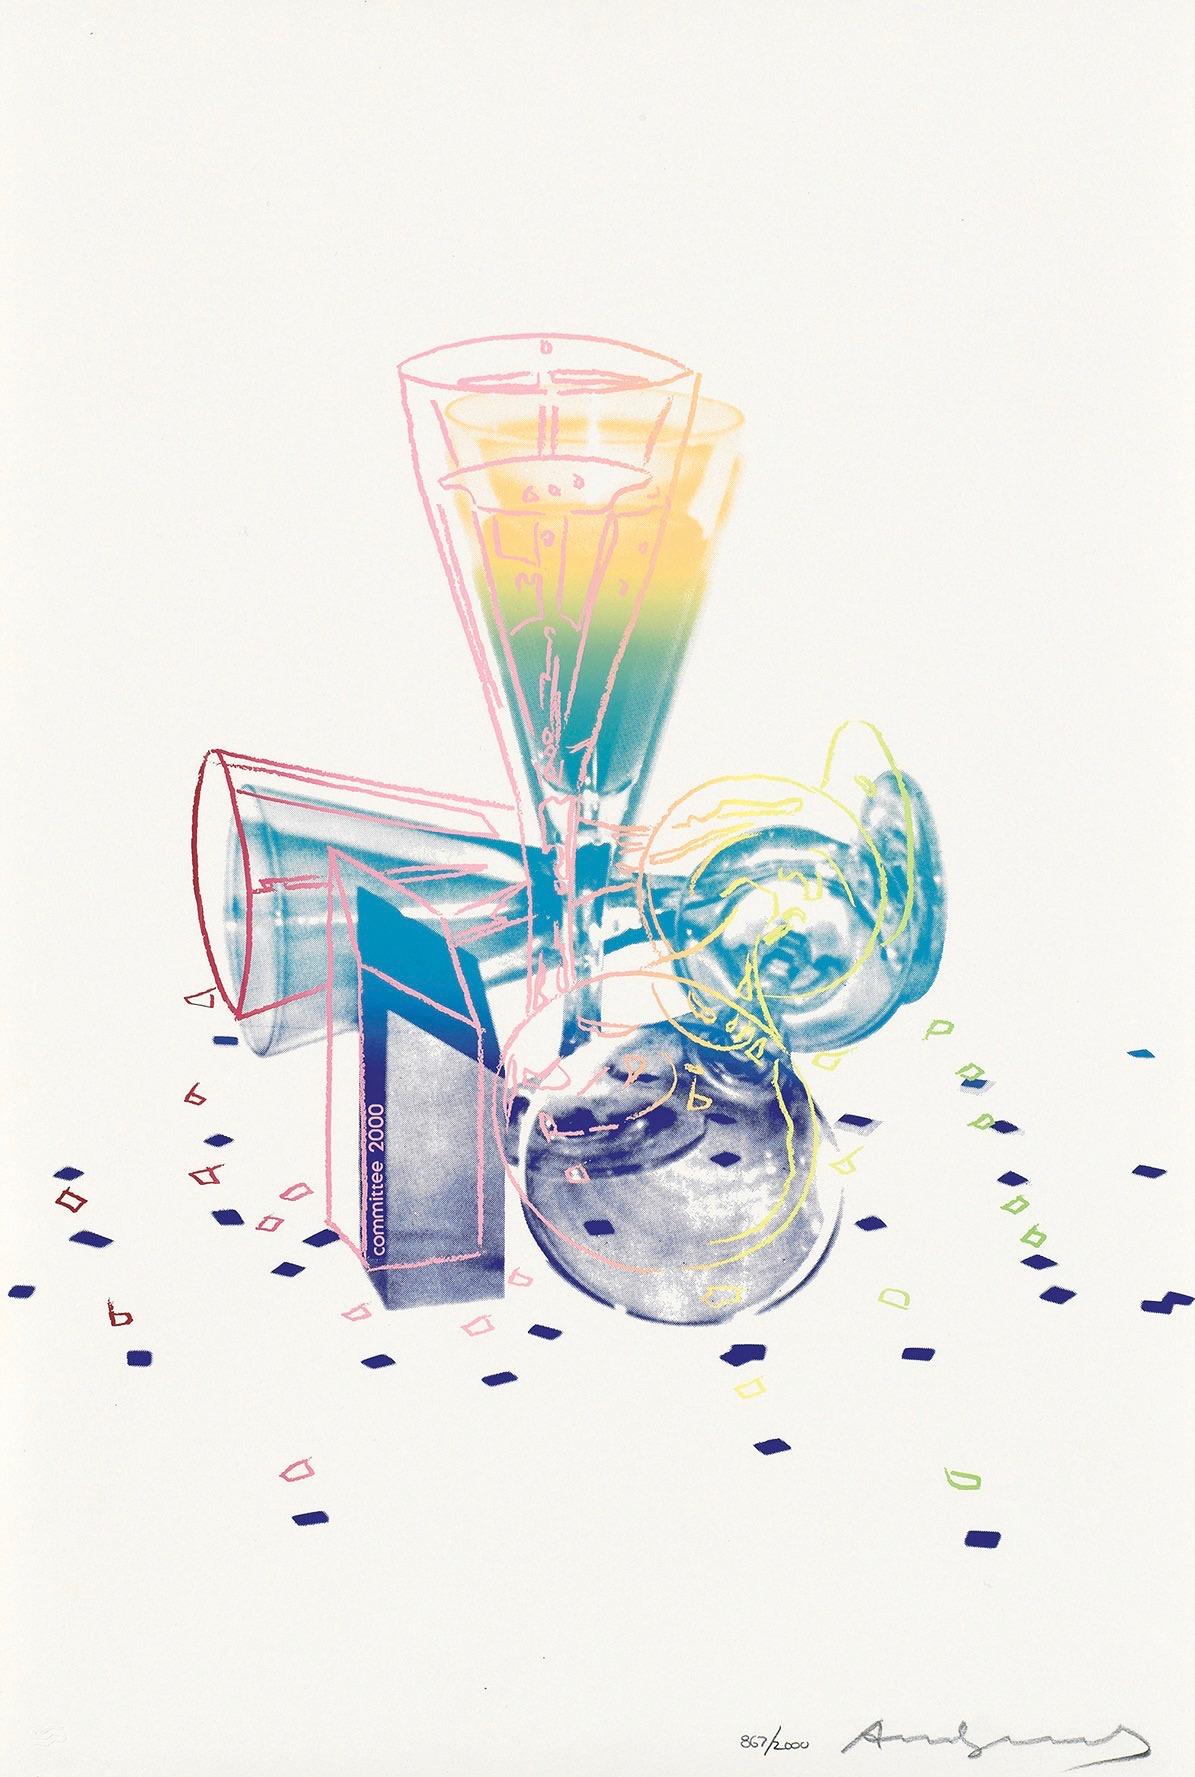 Andy Warhol Landscape Print - Committee 2000 (Feldman & Schellmann II.289)